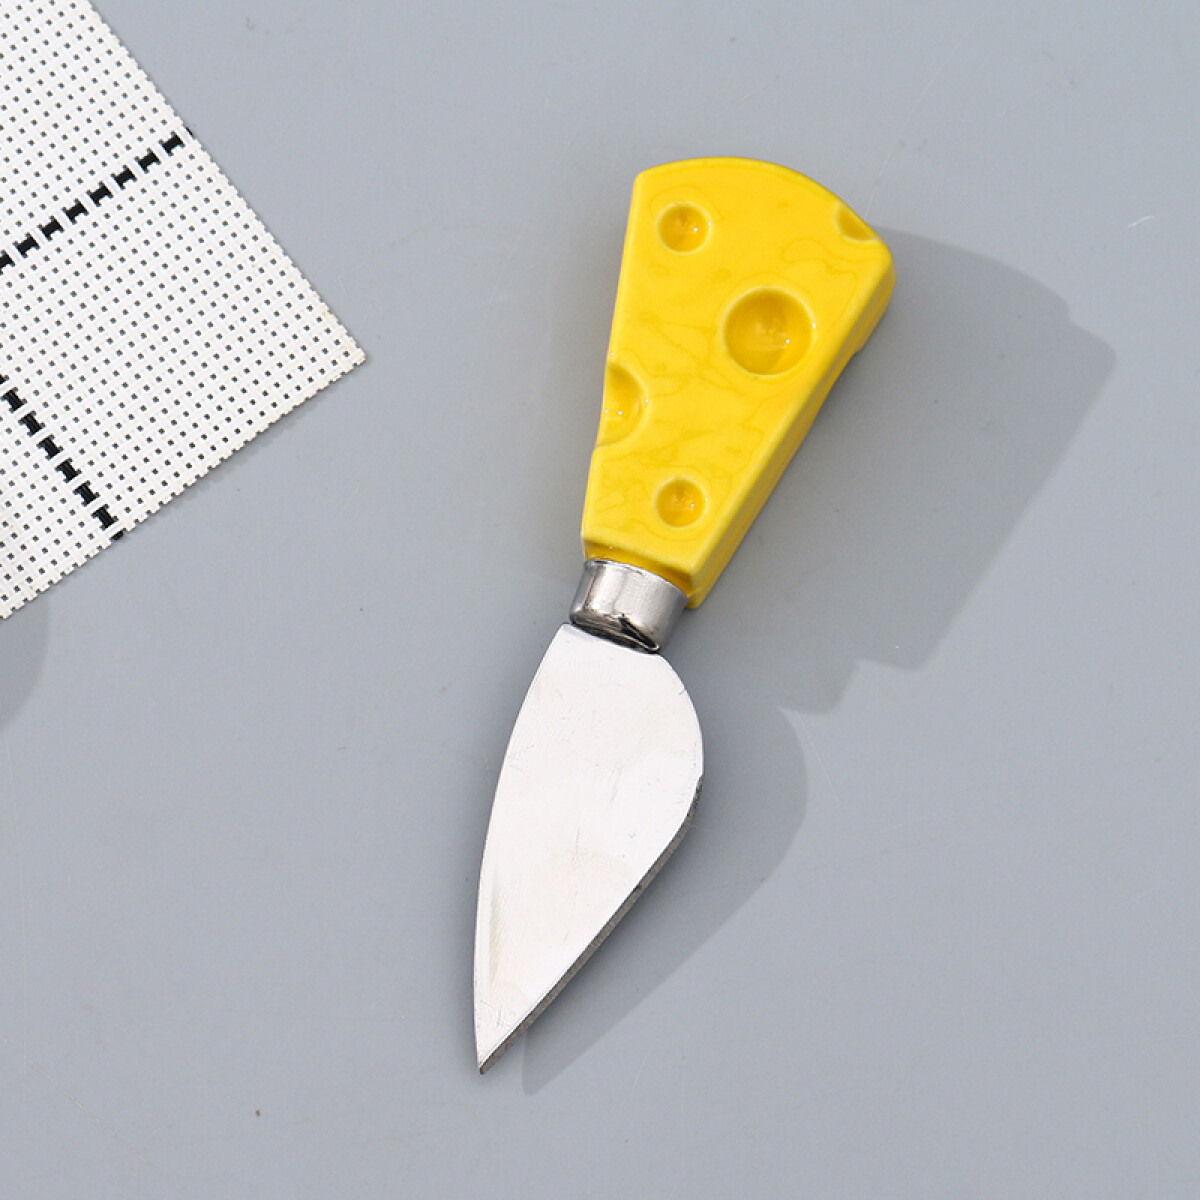 Mini Cuchillo - Quesito - Unica 